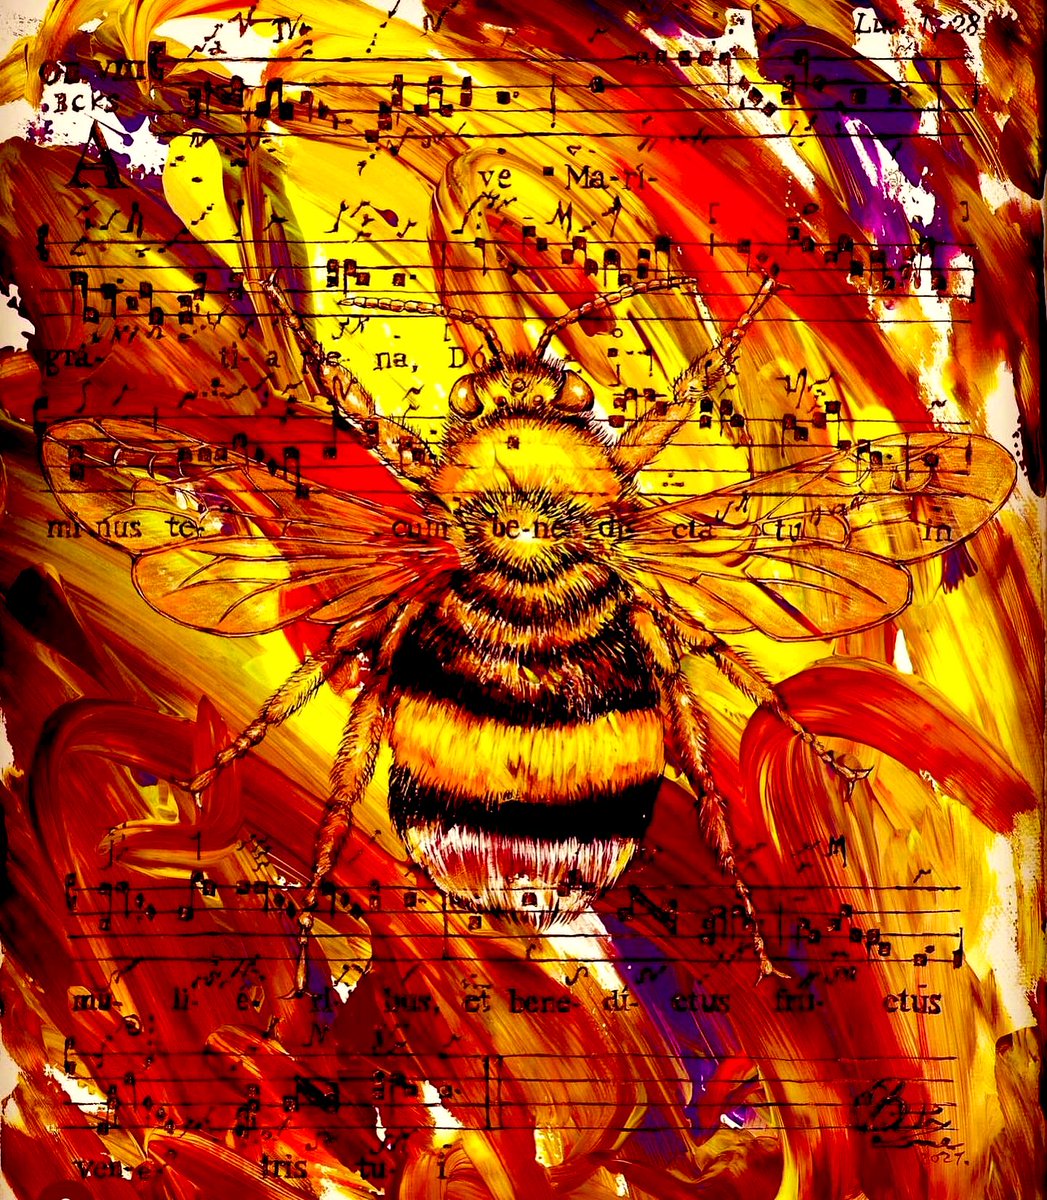 🐝 世界みつばちの日🌷🌼 Ave Maria ✨

World Bee Day ✨We are the Bees 🌏

#世界蜂の日 #蜂の日 #みつばち #worldbeeday #wearethebees #savethebees #un #biodiversity #bee #bees #avemaria #buntainoue #画狂人 #井上文太 #画鬼 @susanrockefeller @333888G @BUNTAiNOUE